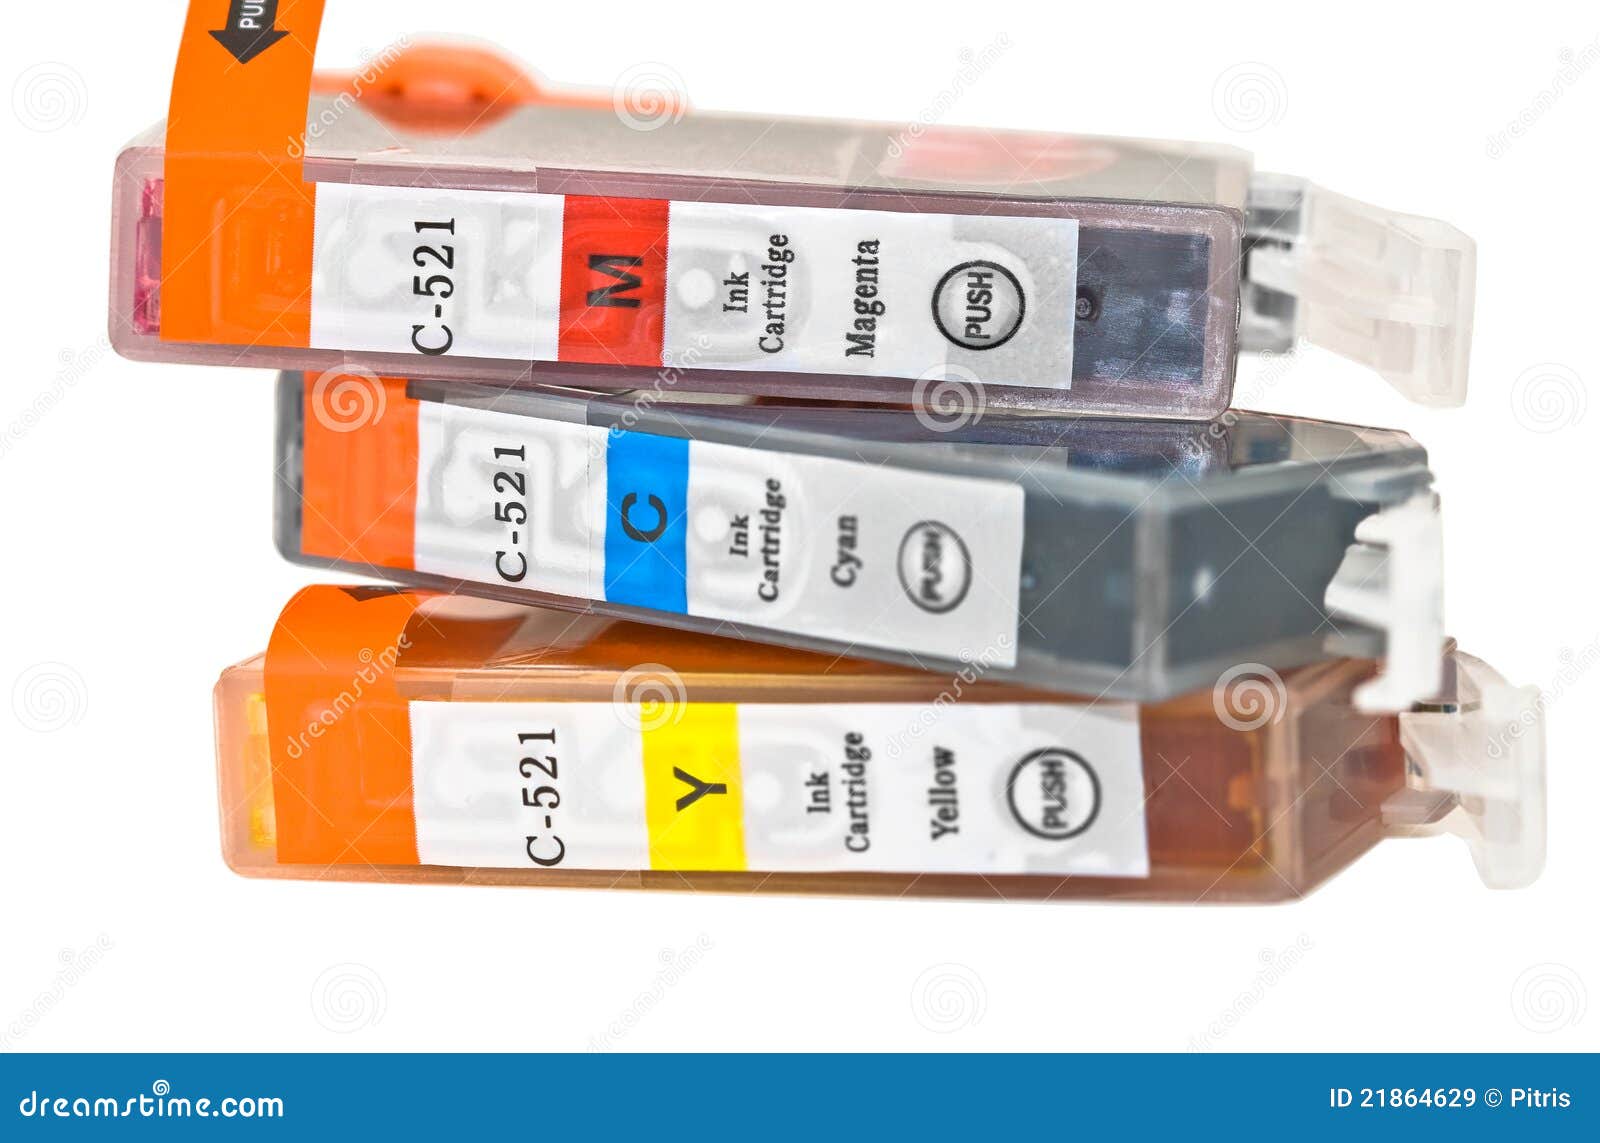 Set Of Ink Printer Cartridges Stock Image - Image of descriptive